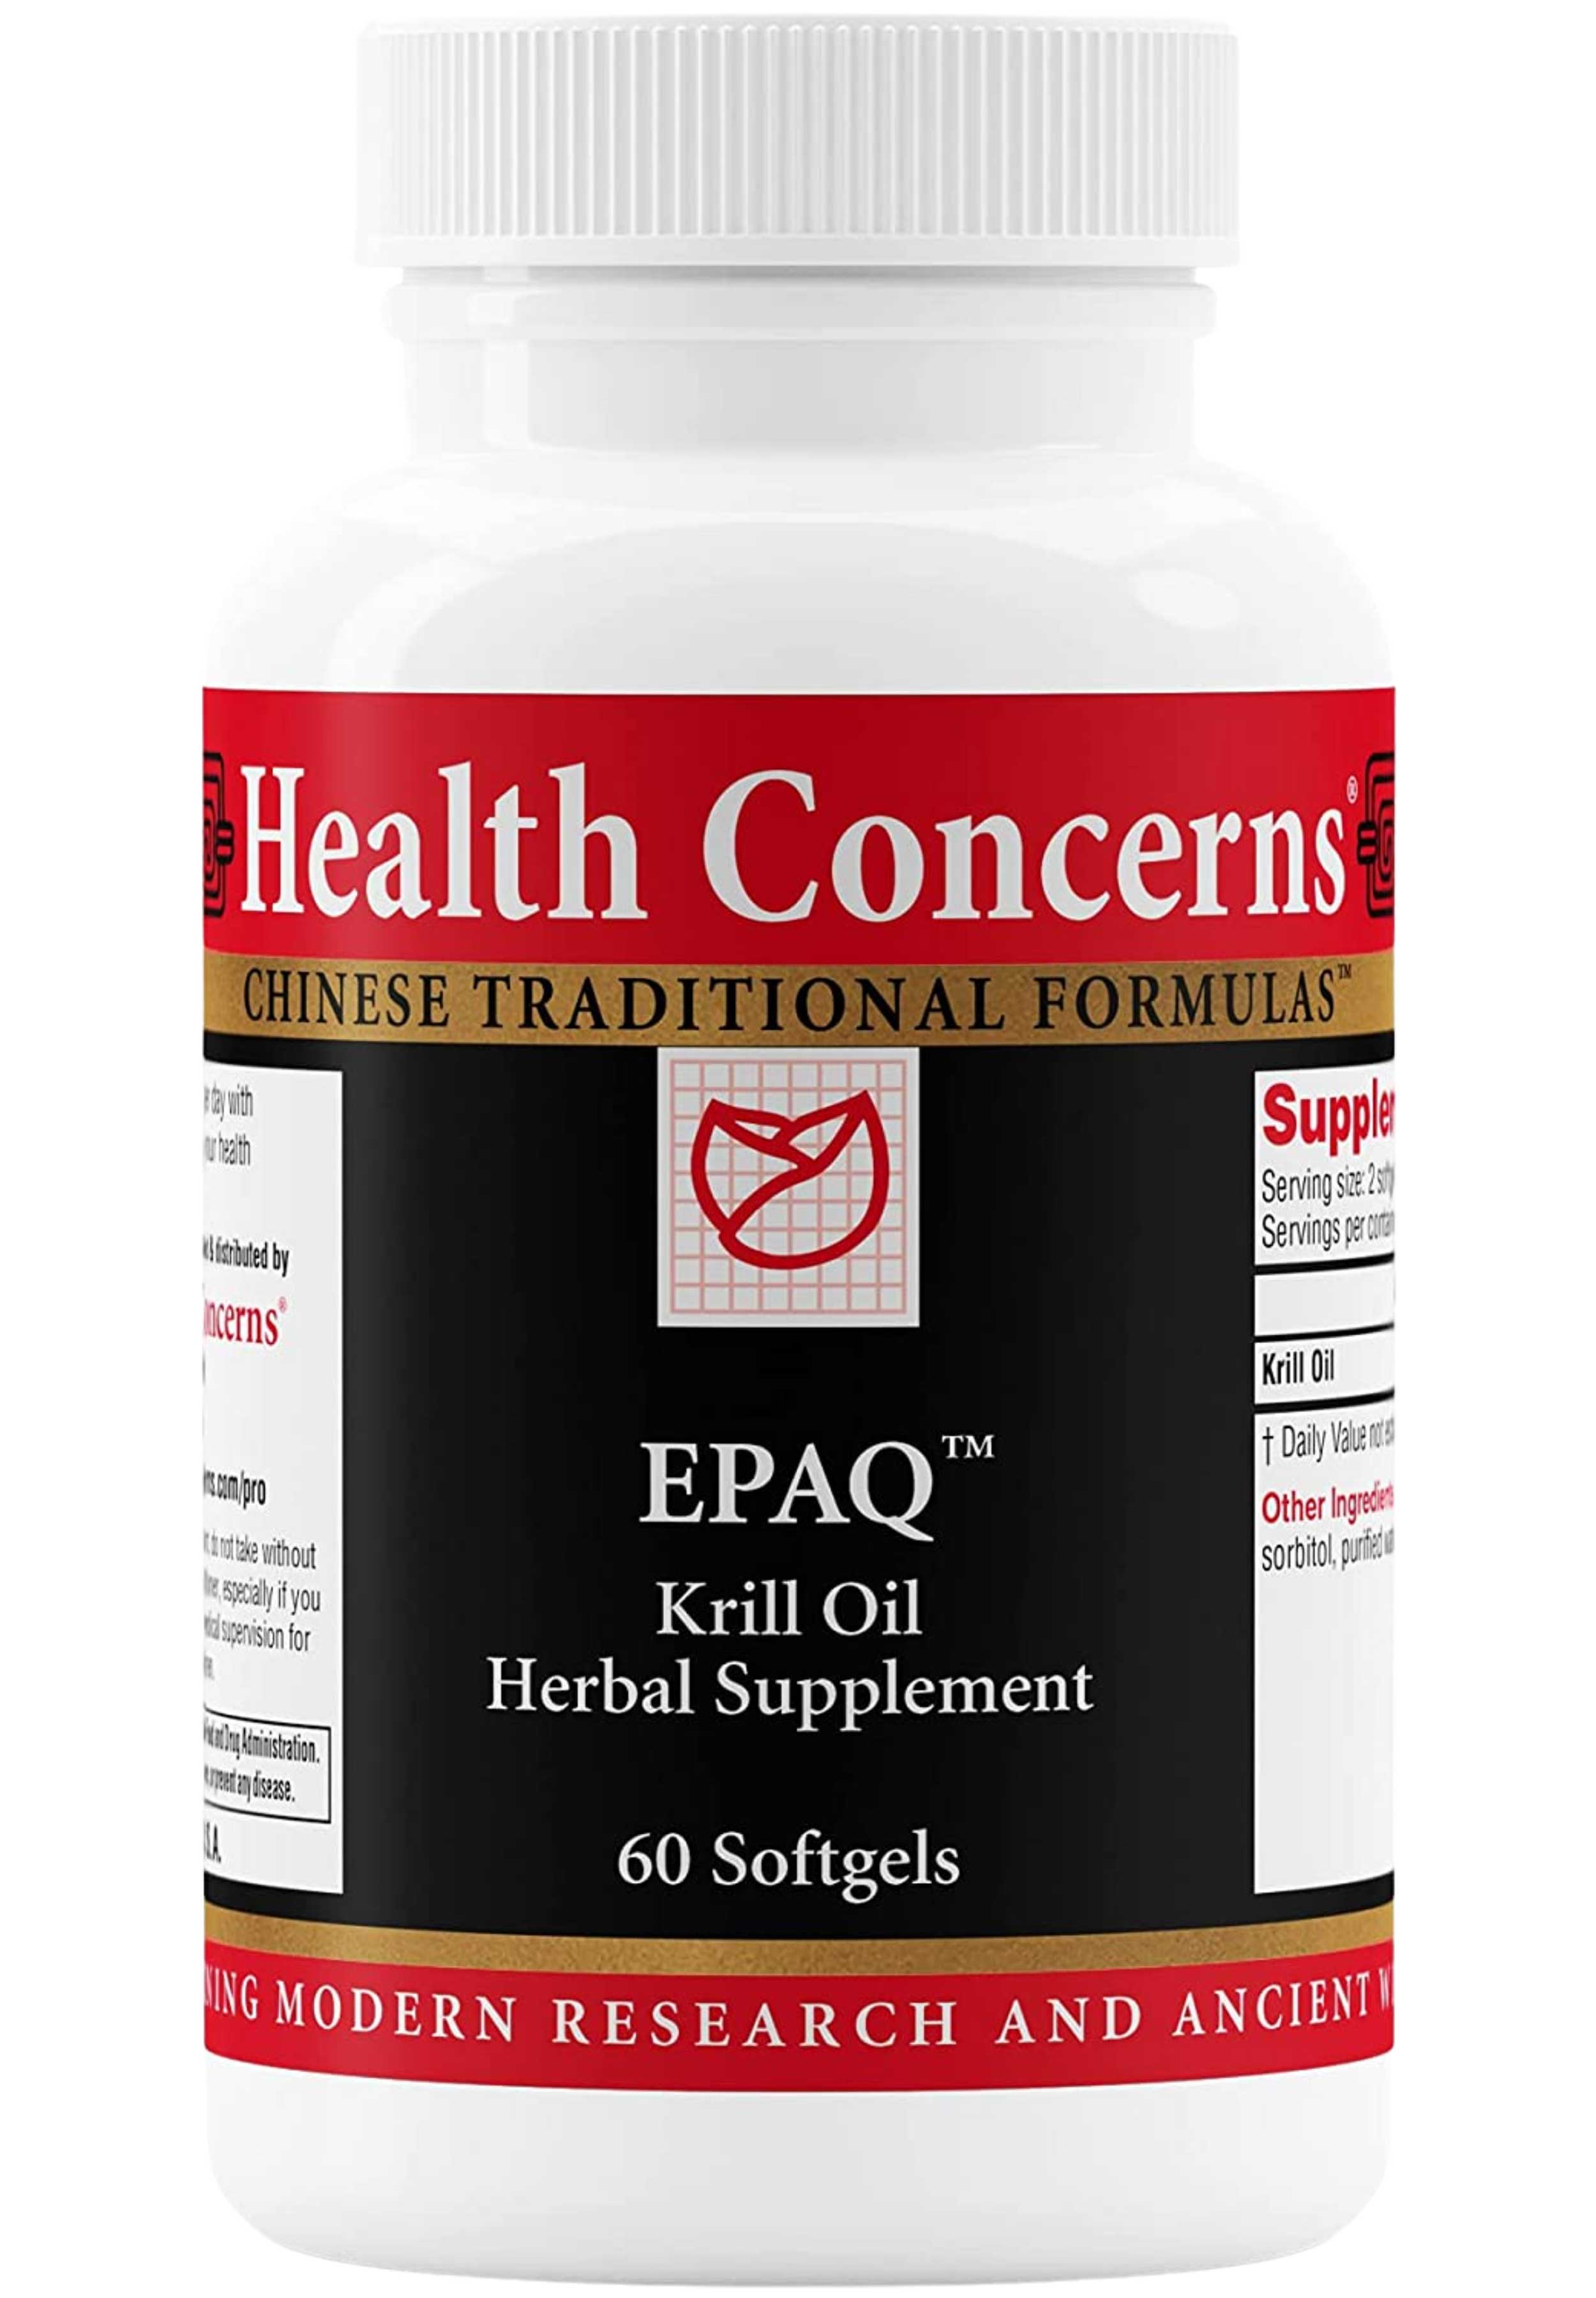 Health Concerns EPAQ